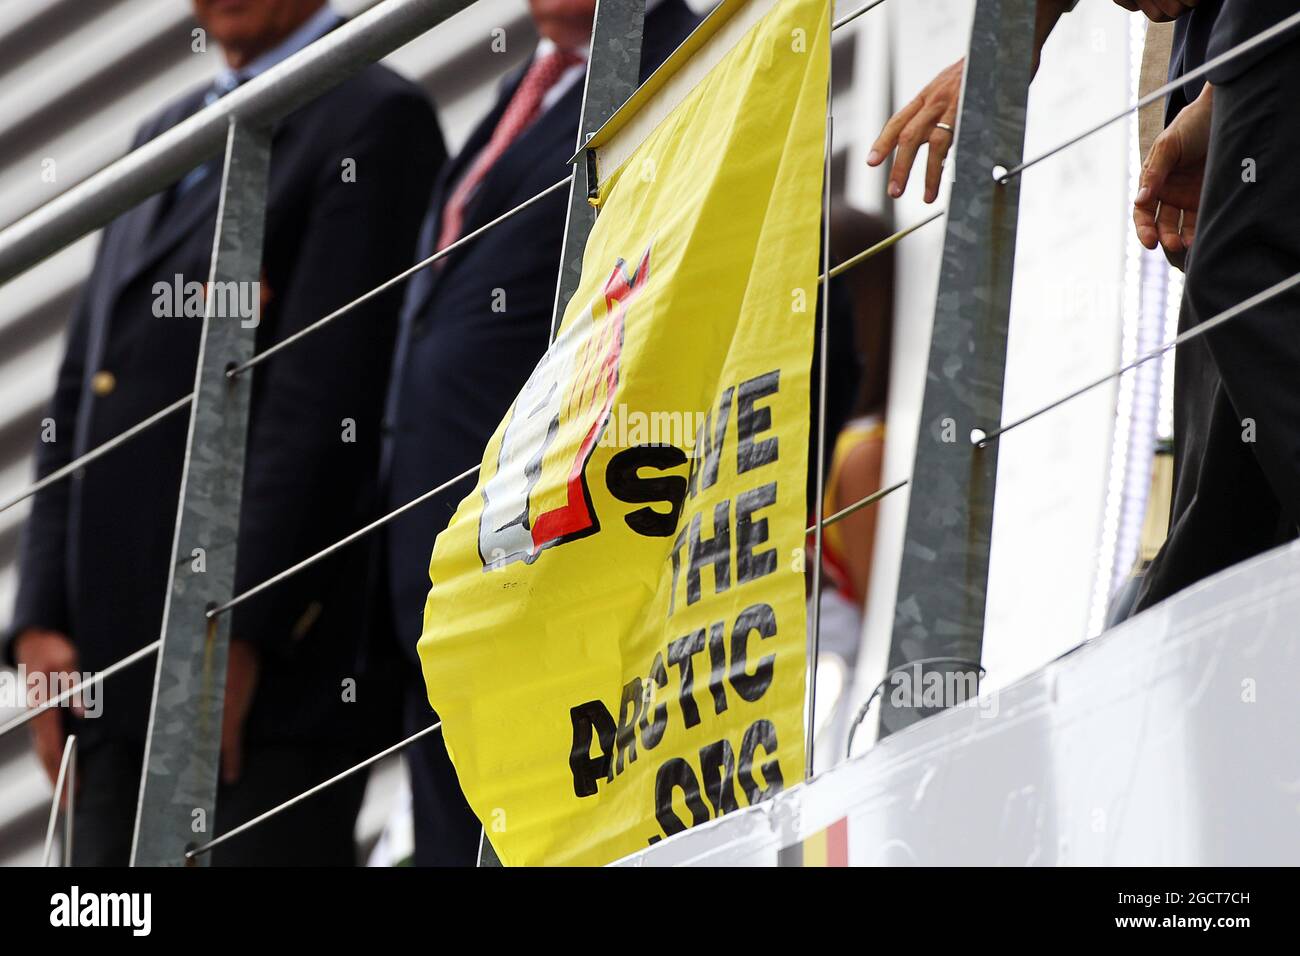 Greenpeace protestiert gegen die Renntitelsponsoren Shell am Podium. Großer Preis von Belgien, Sonntag, 25. August 2013. Spa-Francorchamps, Belgien. Stockfoto